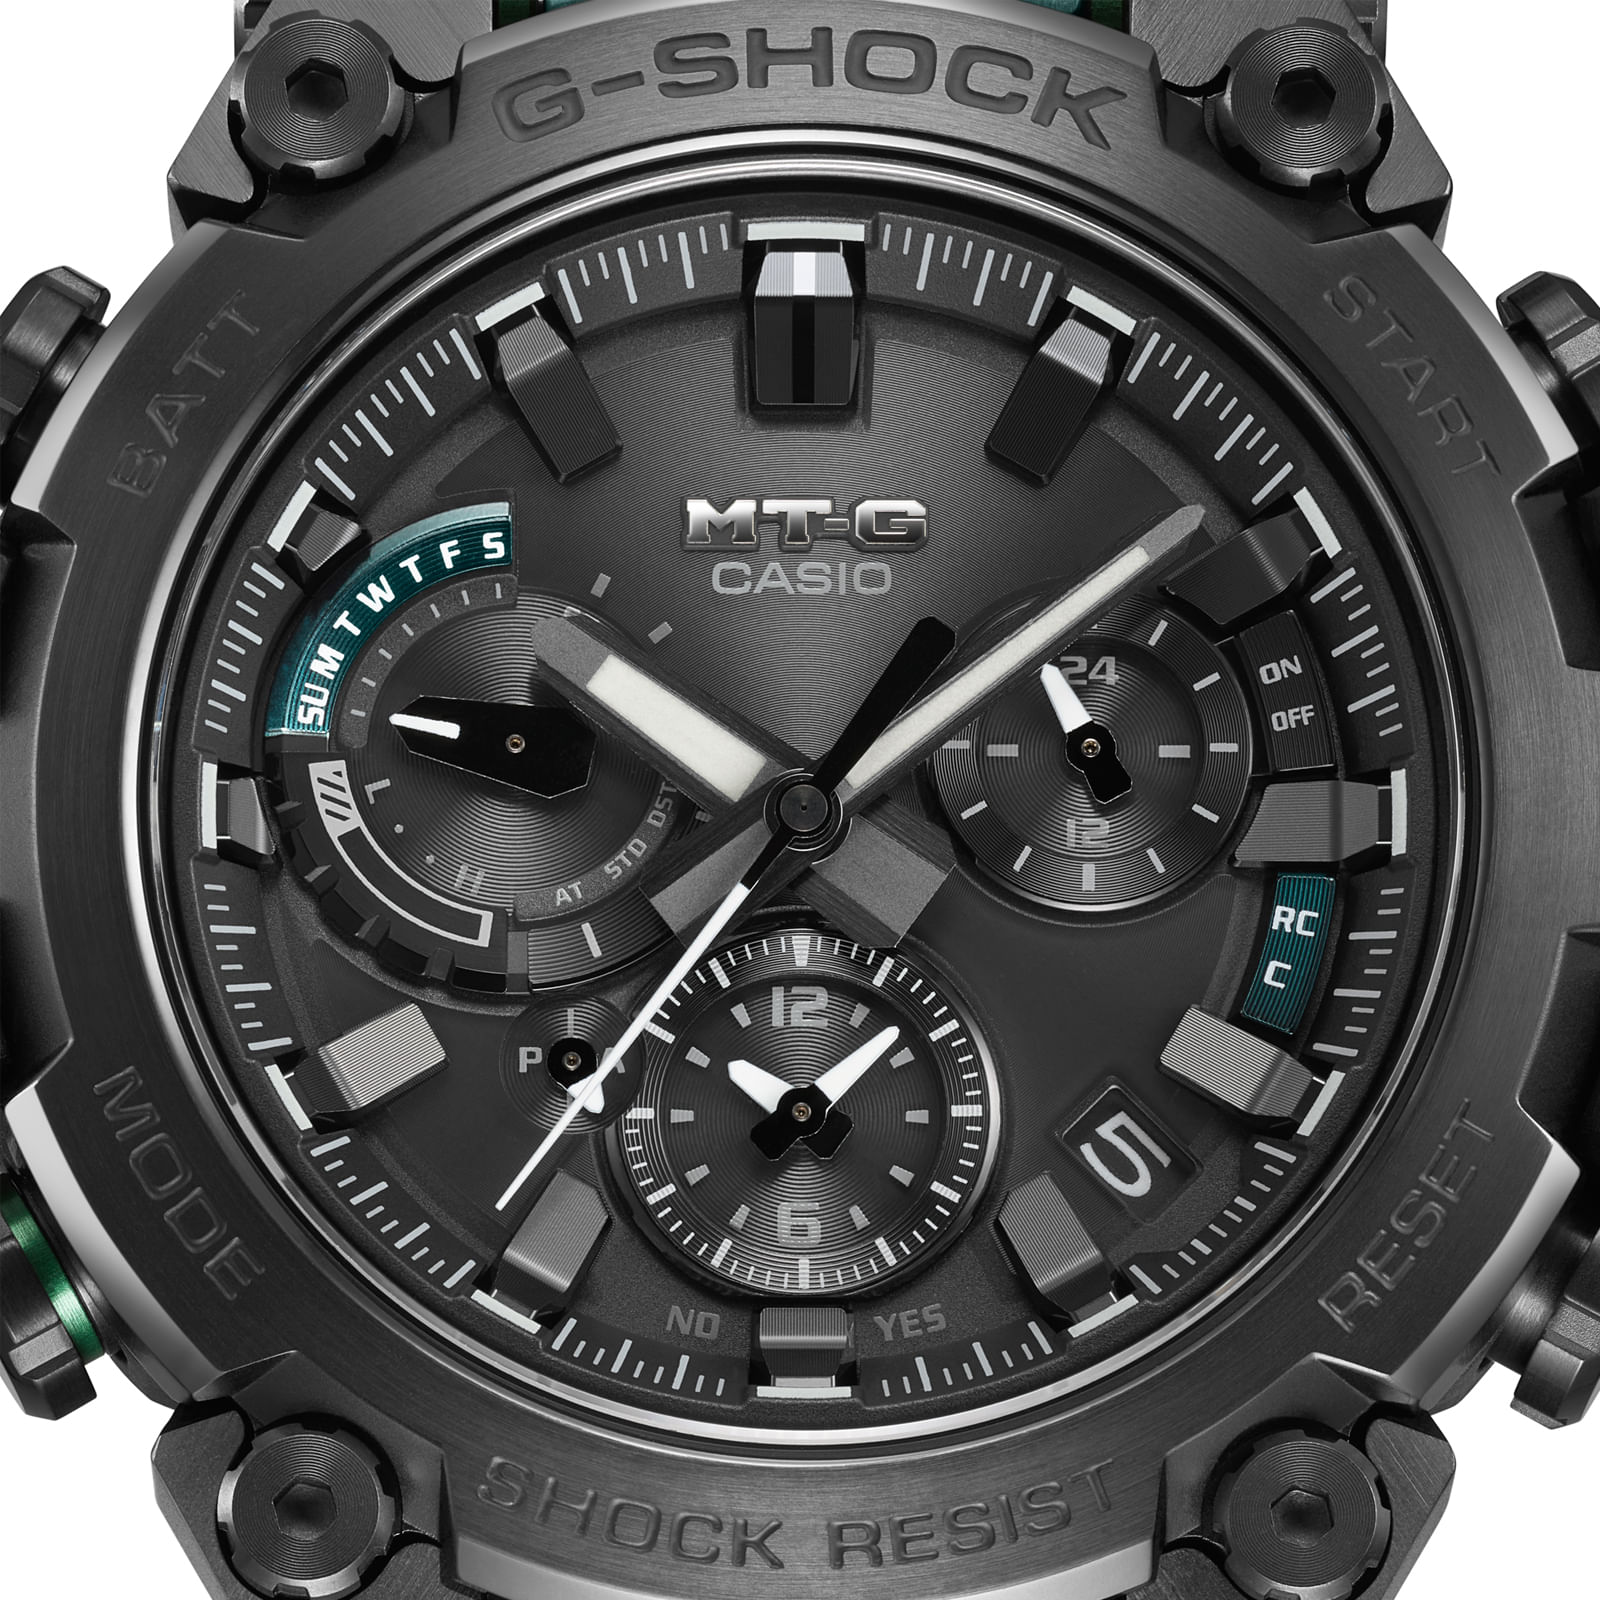 Reloj G-SHOCK GWG-2000CR-1ADR Resina/Acero Hombre Negro - Btime